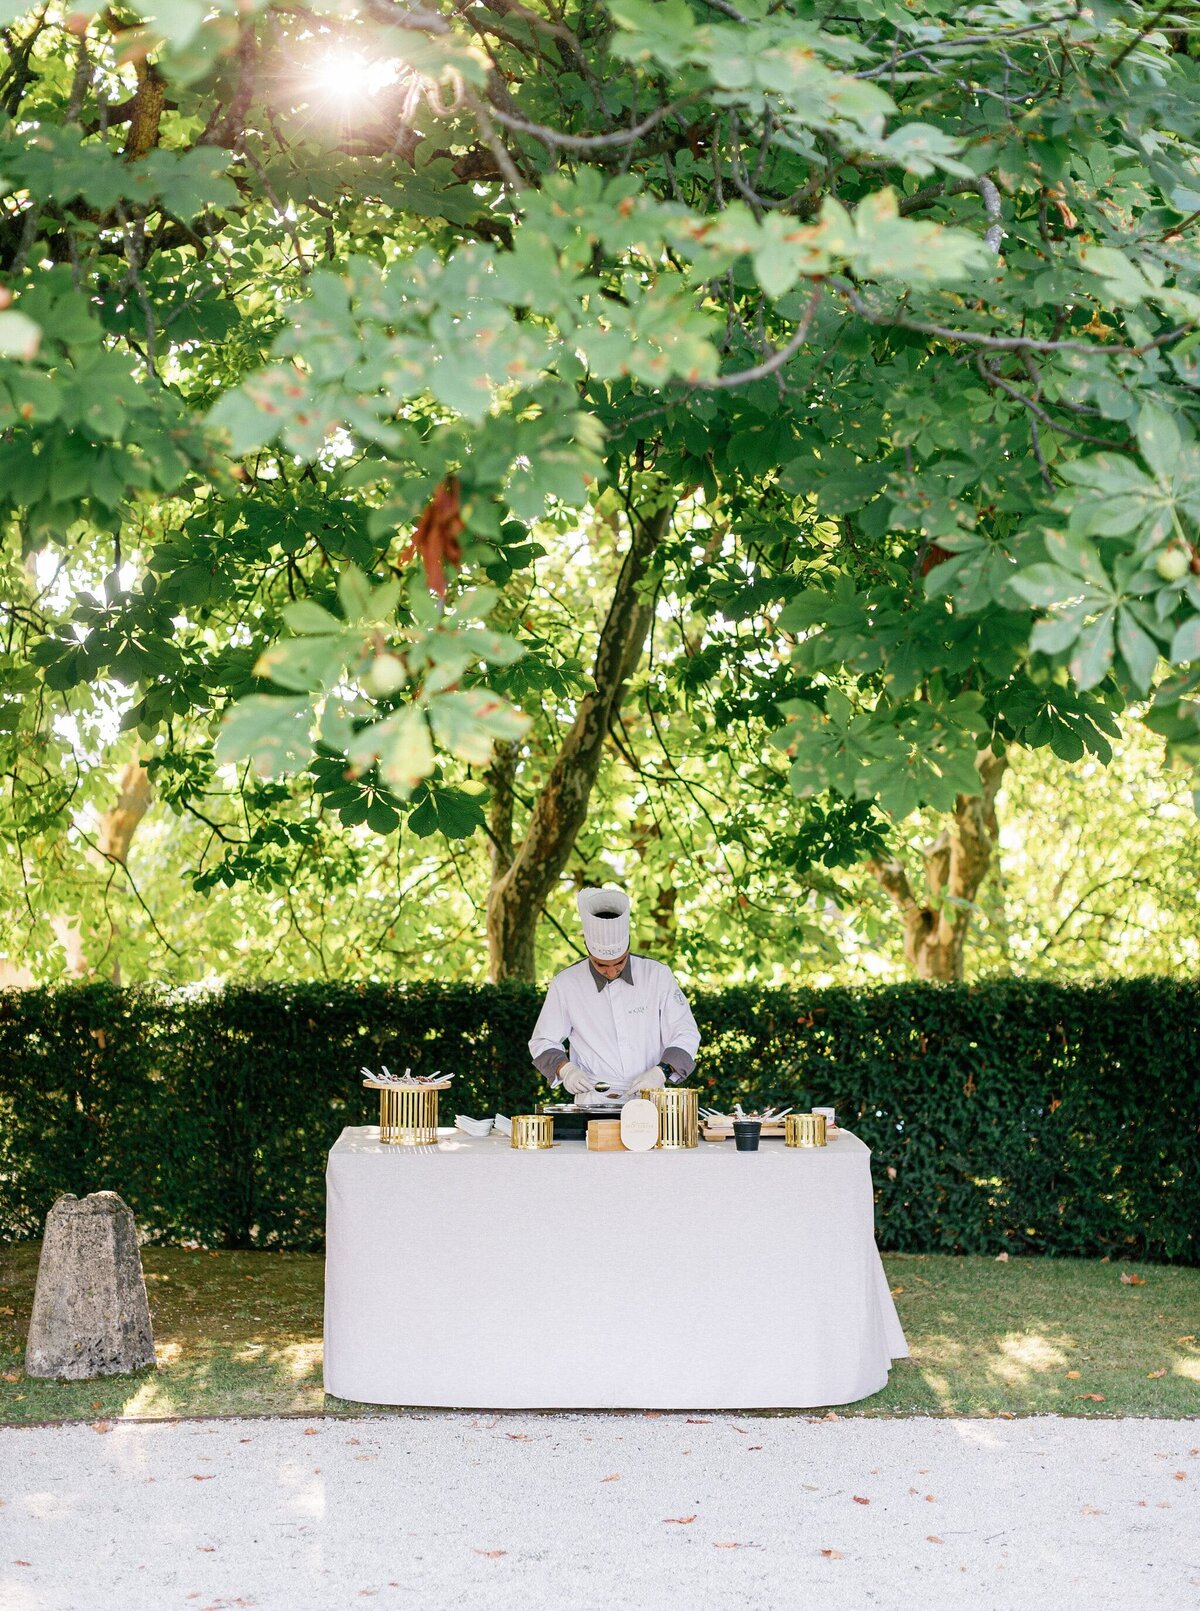 Garden-wedding-cocktail-station-chef